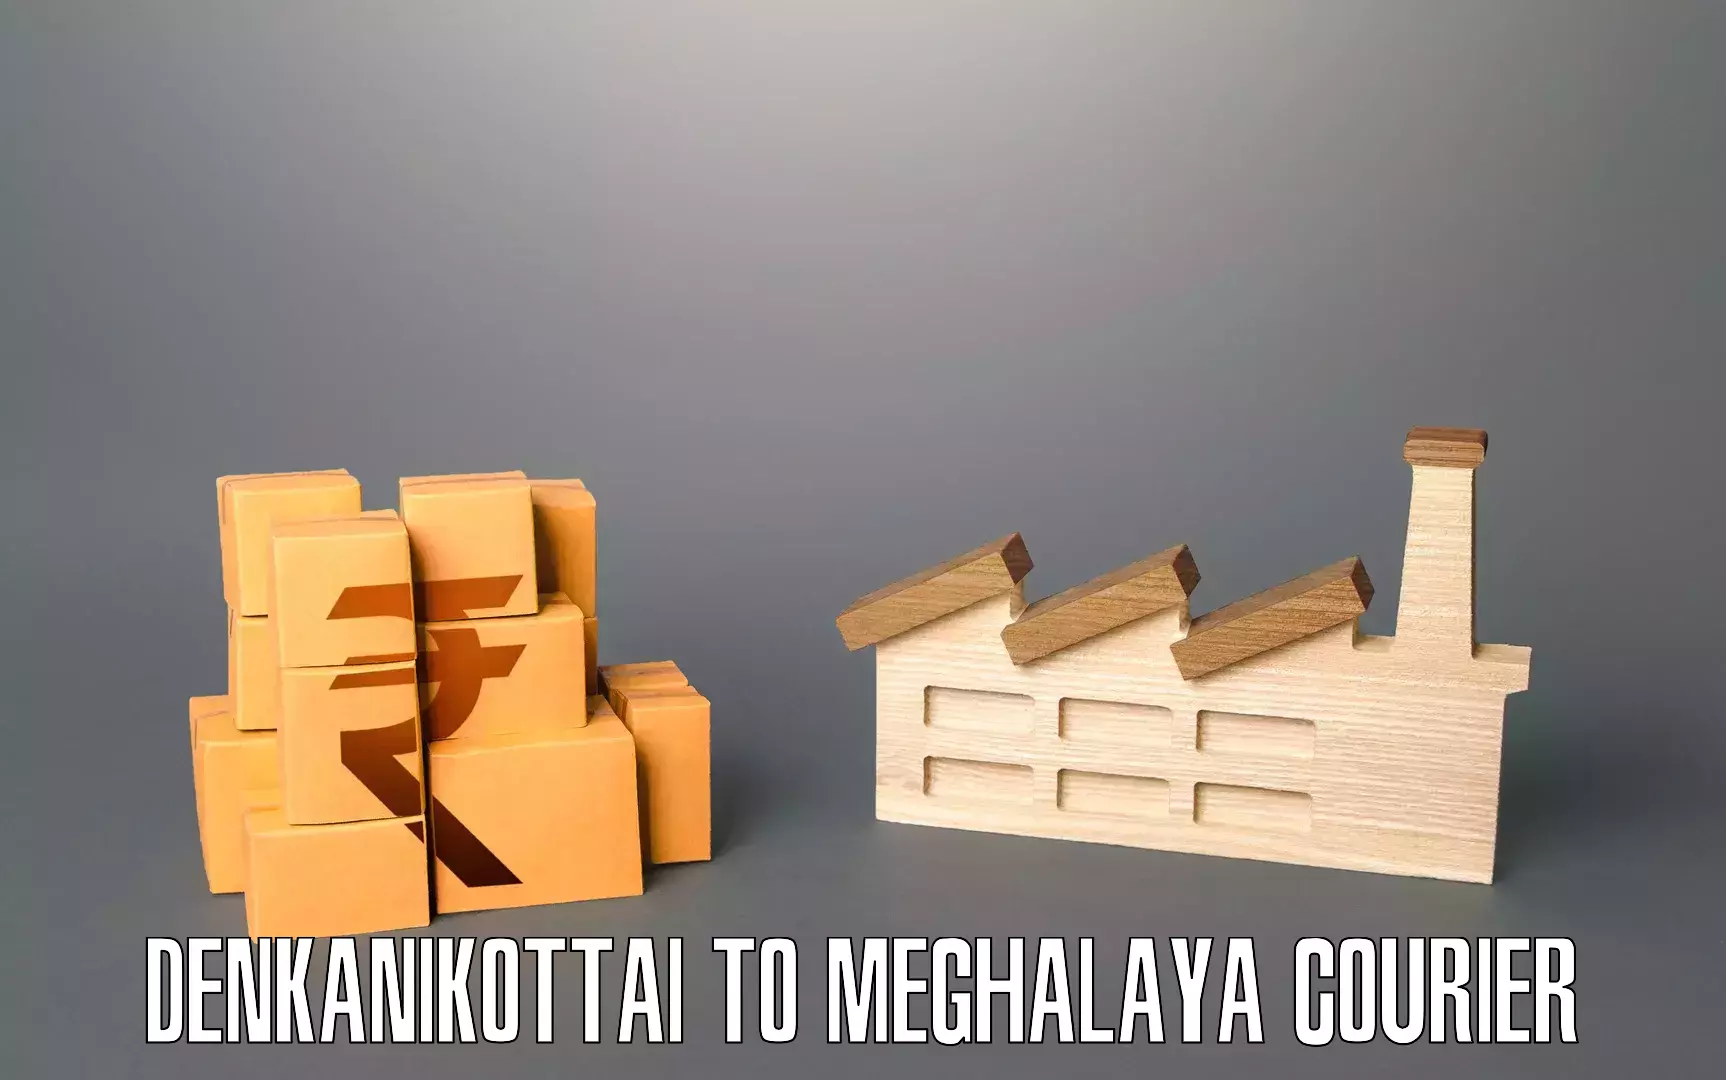 Residential moving services Denkanikottai to Meghalaya